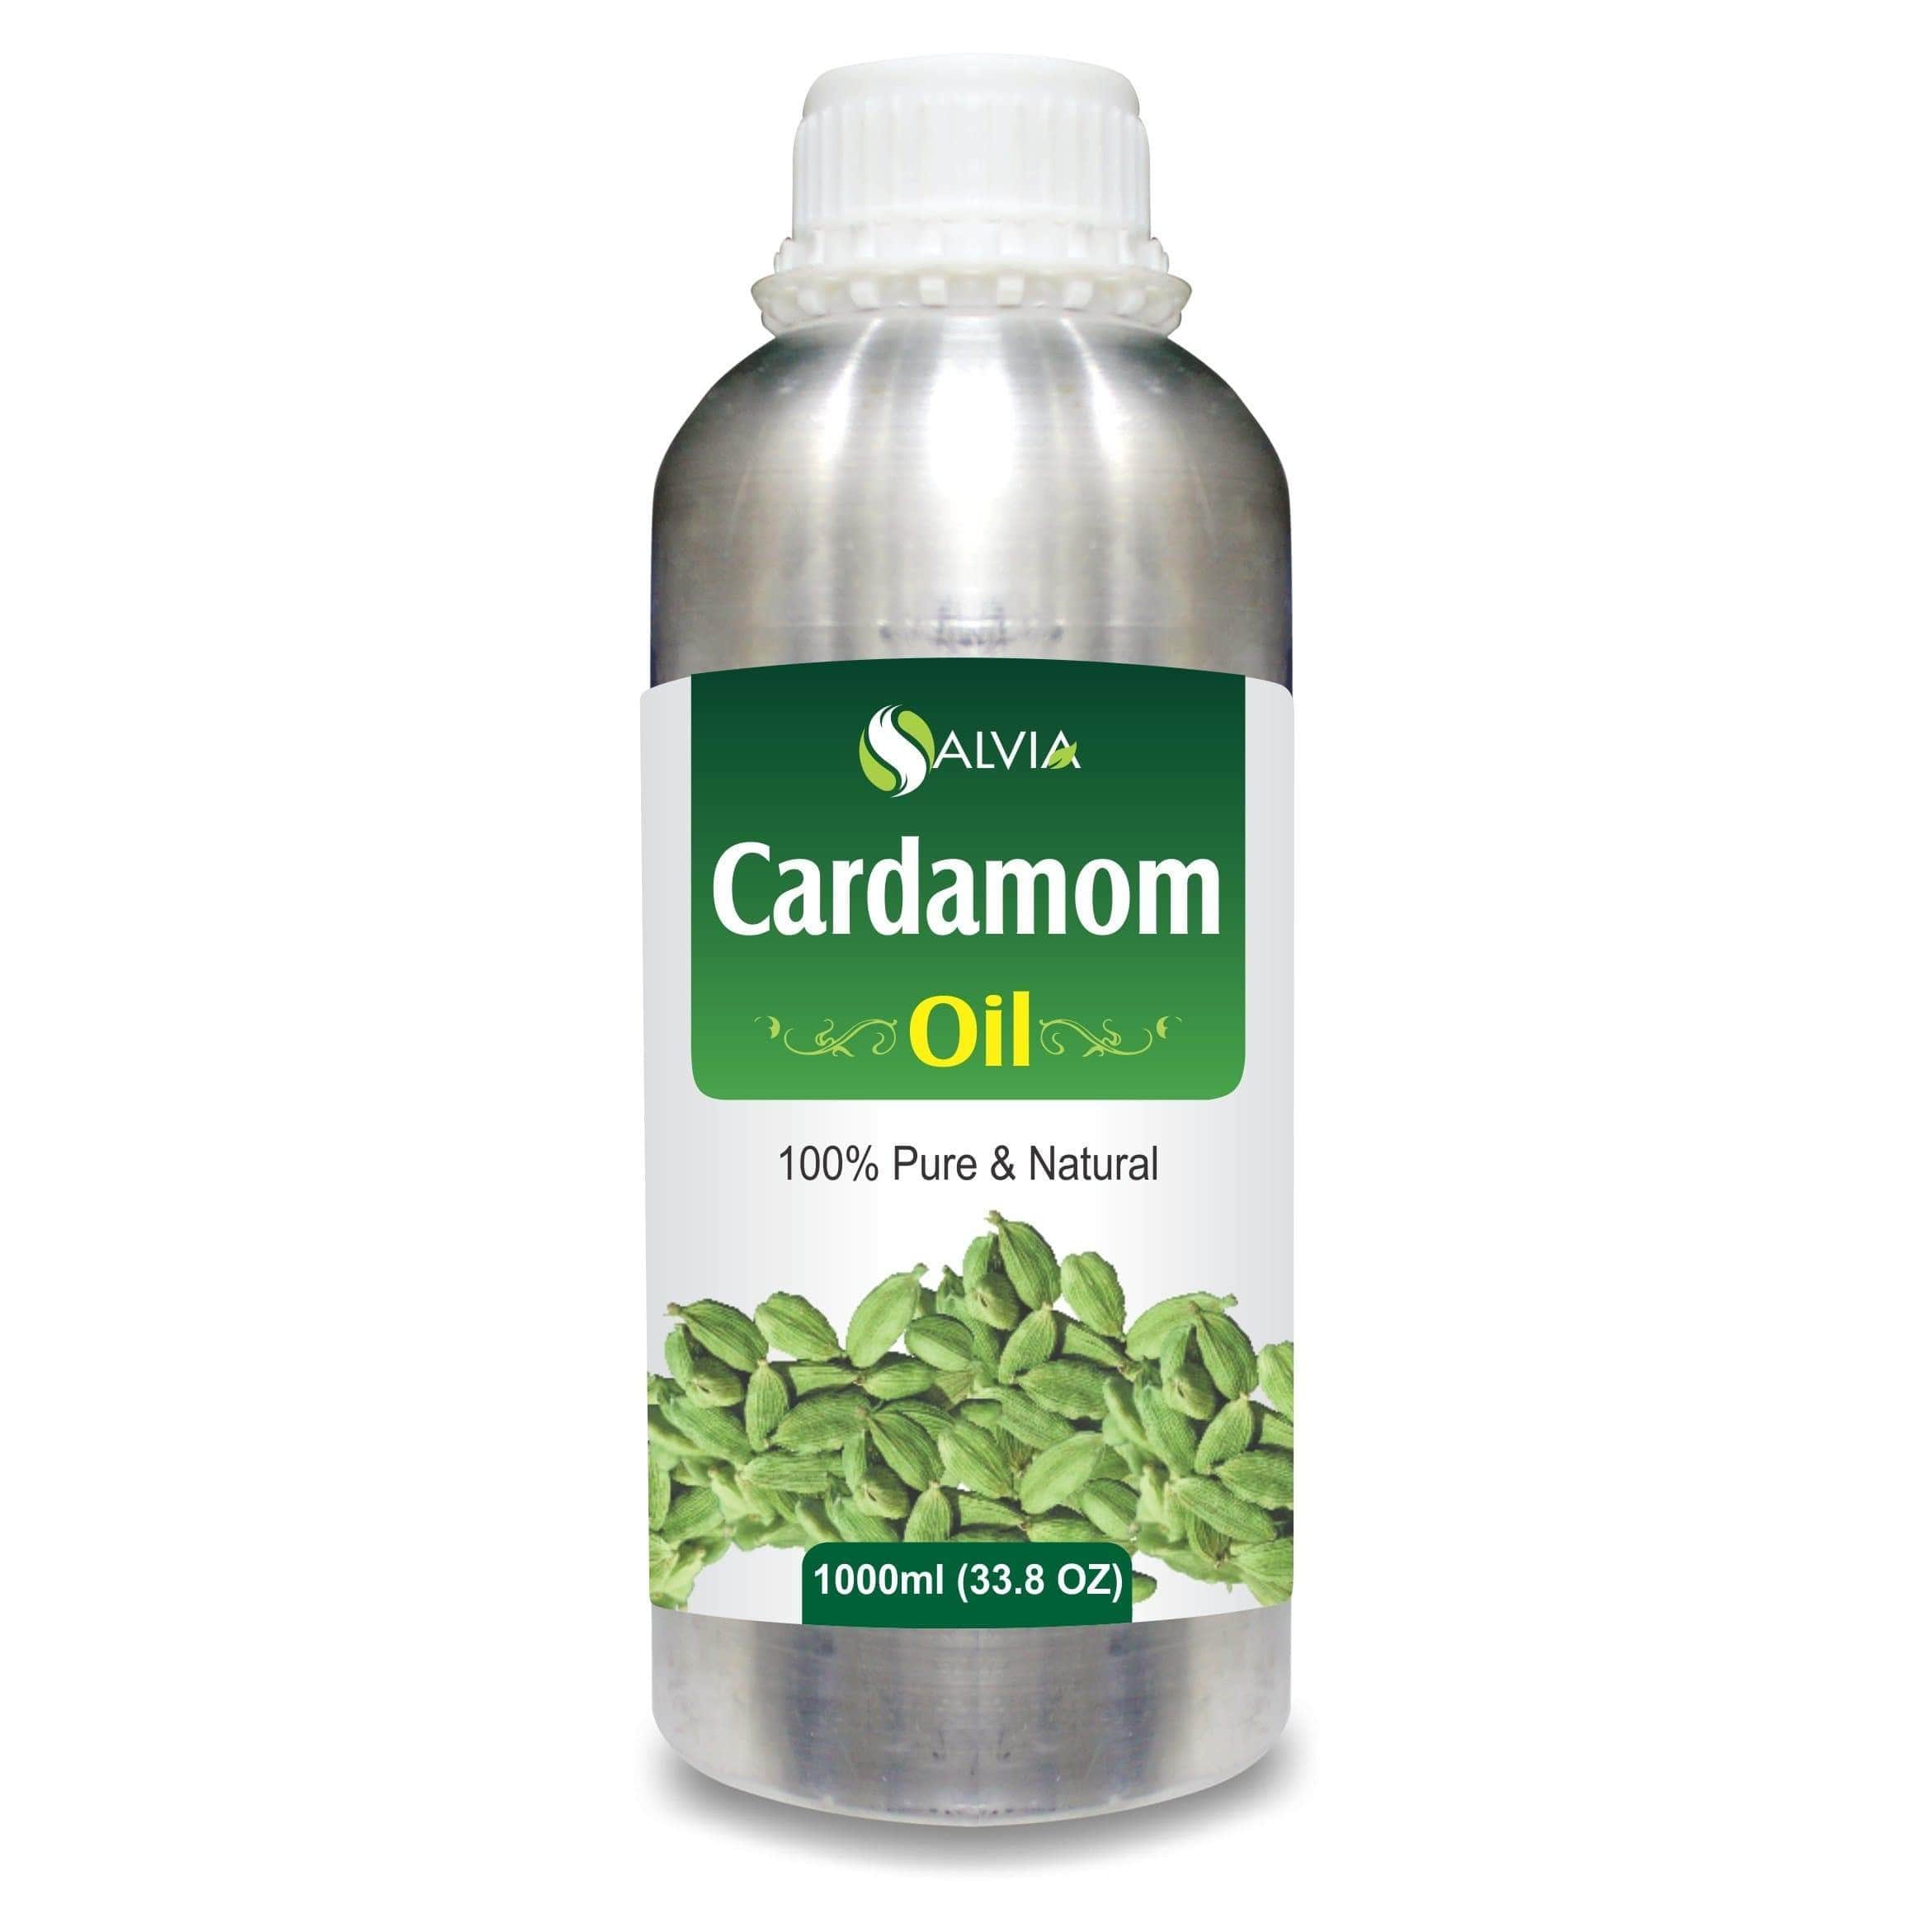  cardamom oil in hindi